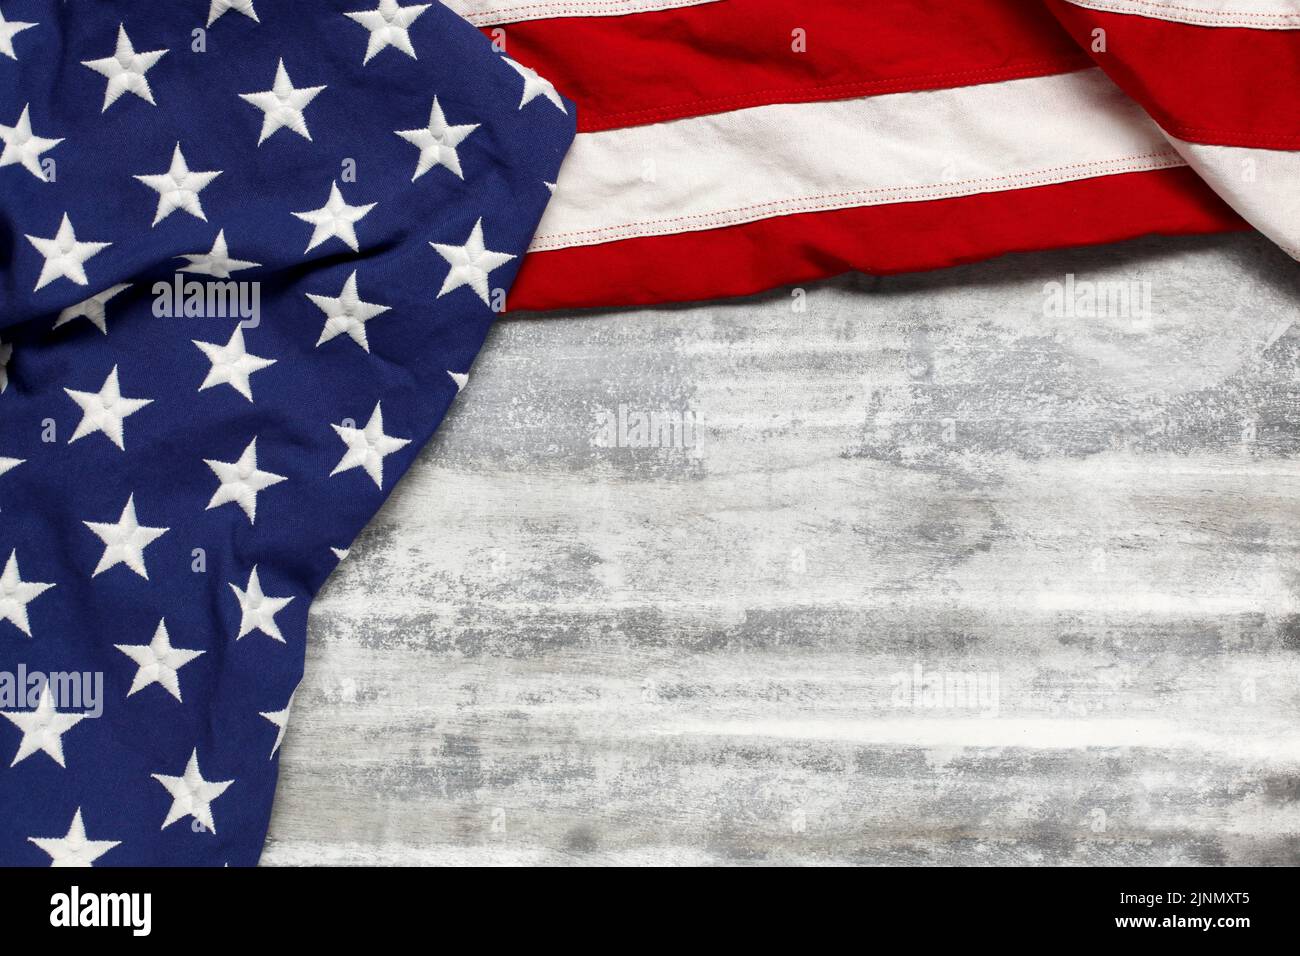 US-amerikanische Flagge auf abgenutztem weißen Holzhintergrund. Für den USA Memorial Day, den Veteran's Day, den Labor Day oder die Feier des 4. Juli. Mit leerem Leerzeichen für tex Stockfoto